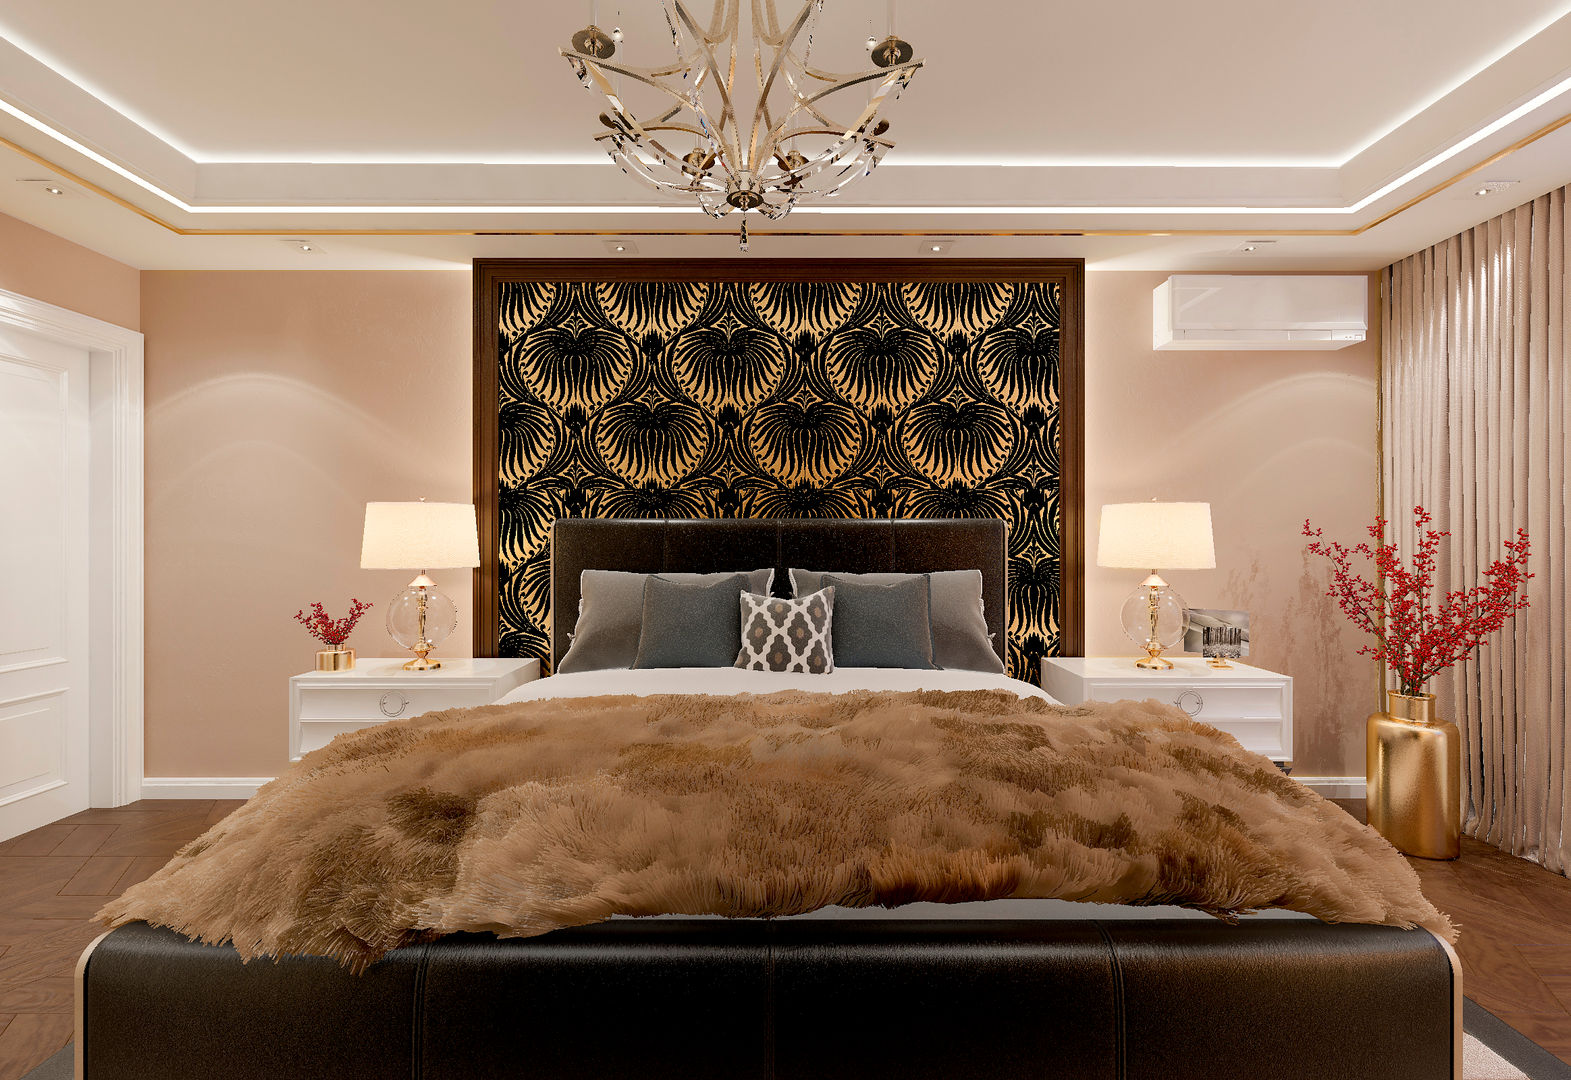 Спальня "Gold & fur", Студия дизайна Дарьи Одарюк Студия дизайна Дарьи Одарюк غرفة نوم